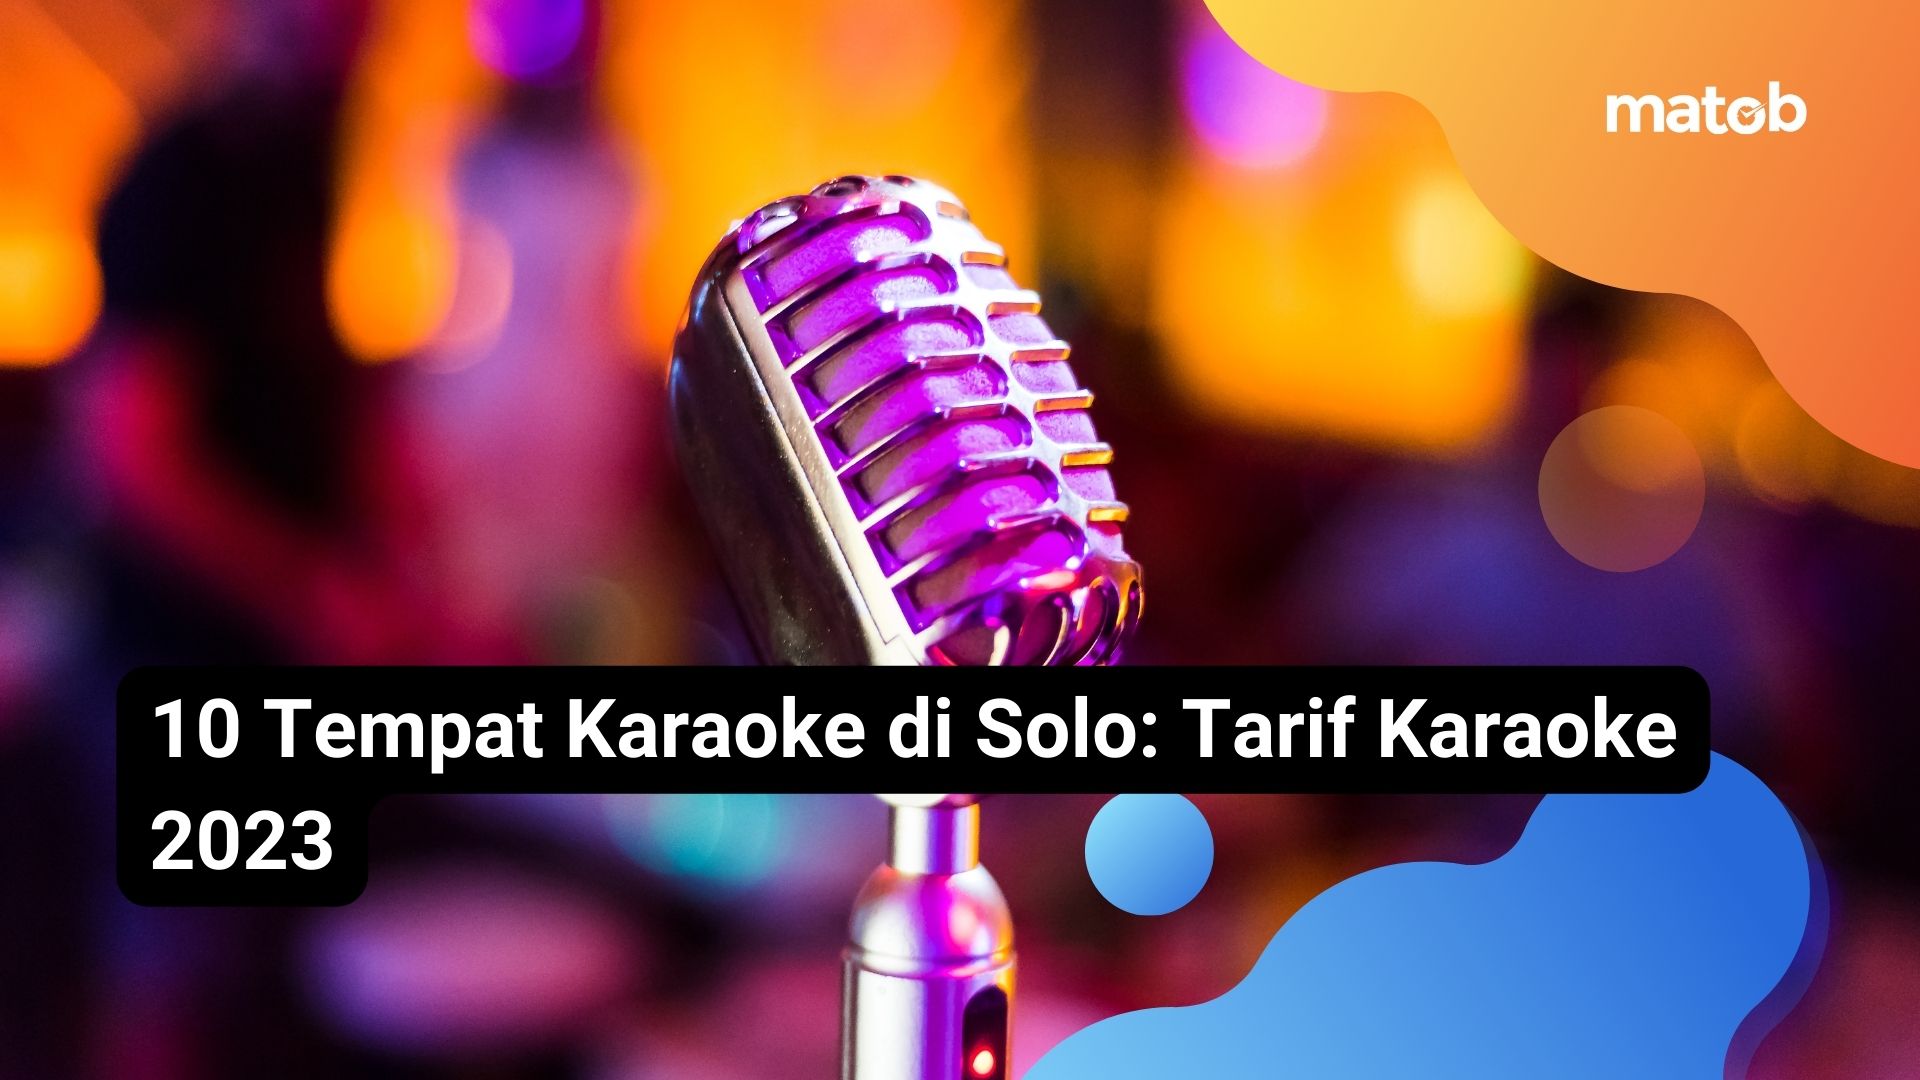 10 Tempat Karaoke di Solo: Tarif Karaoke 2023